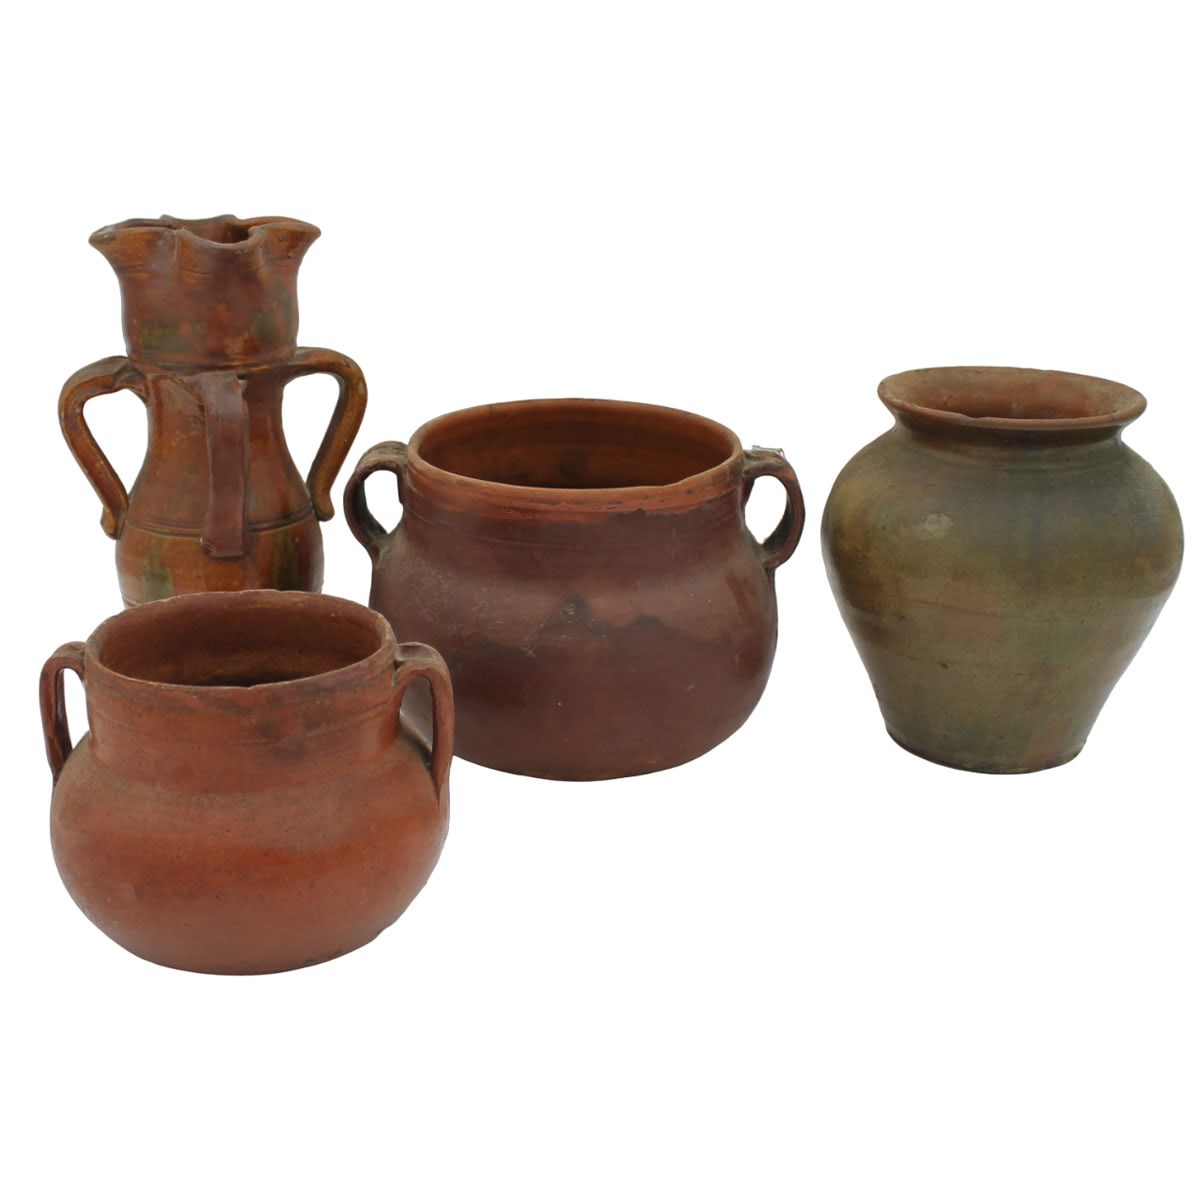 Quattro vasi - Four vases